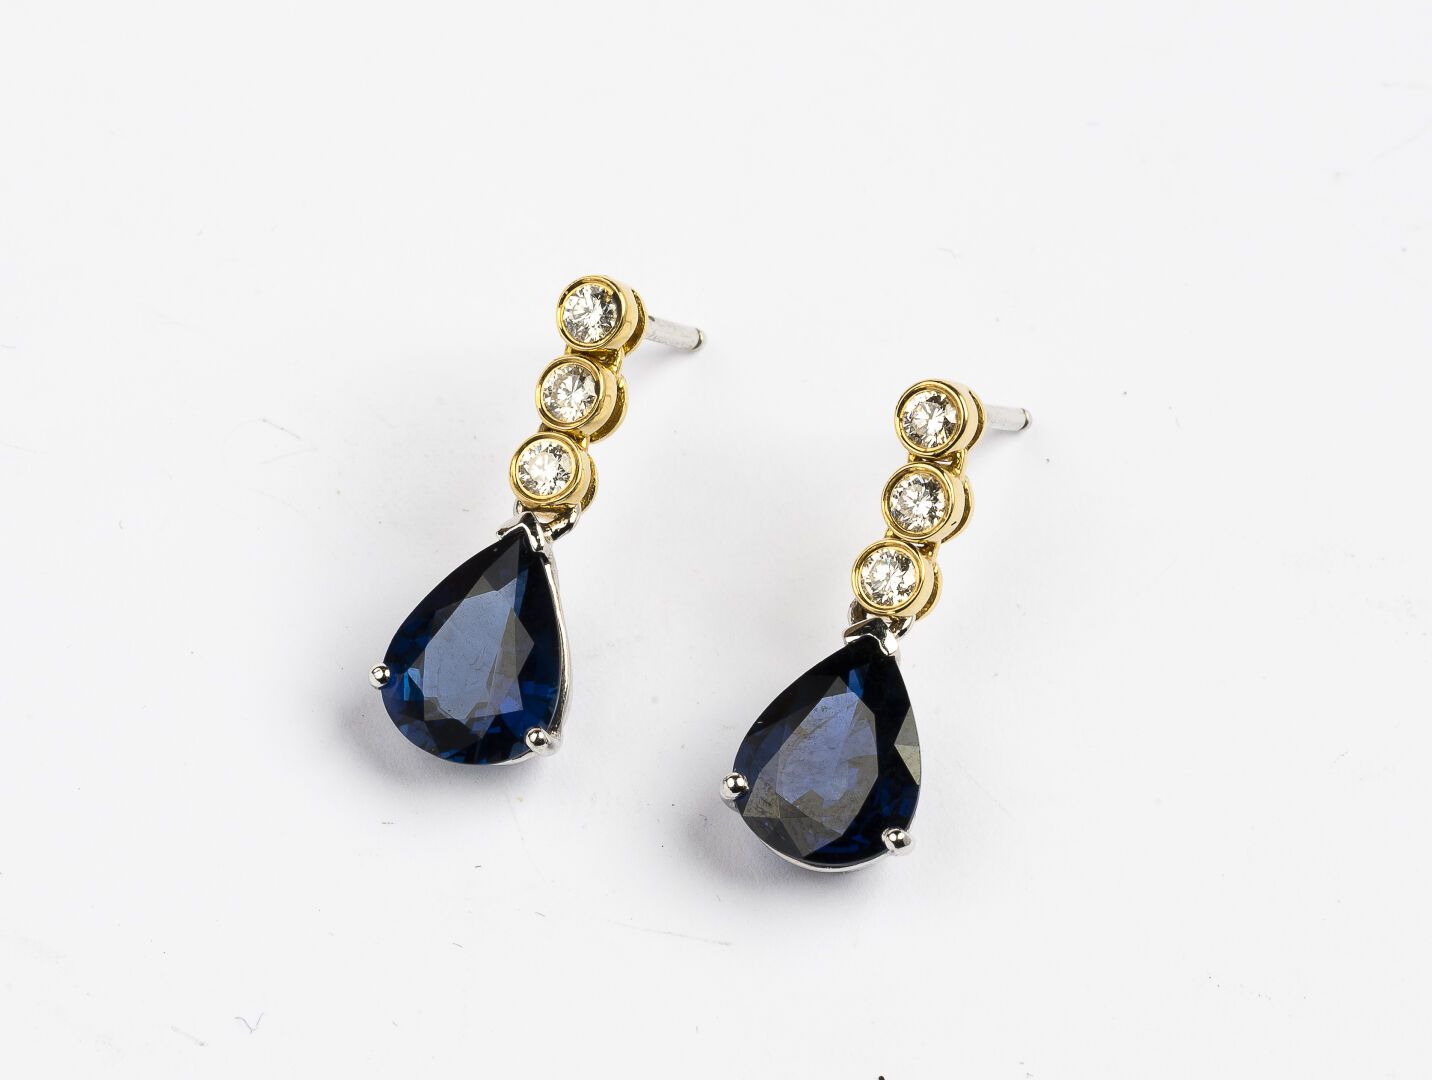 Null 耳环一对

两个750°/°的黄金

镶嵌一排三颗钻石，托着一颗约2.50克拉的梨形蓝宝石。

毛重：5克